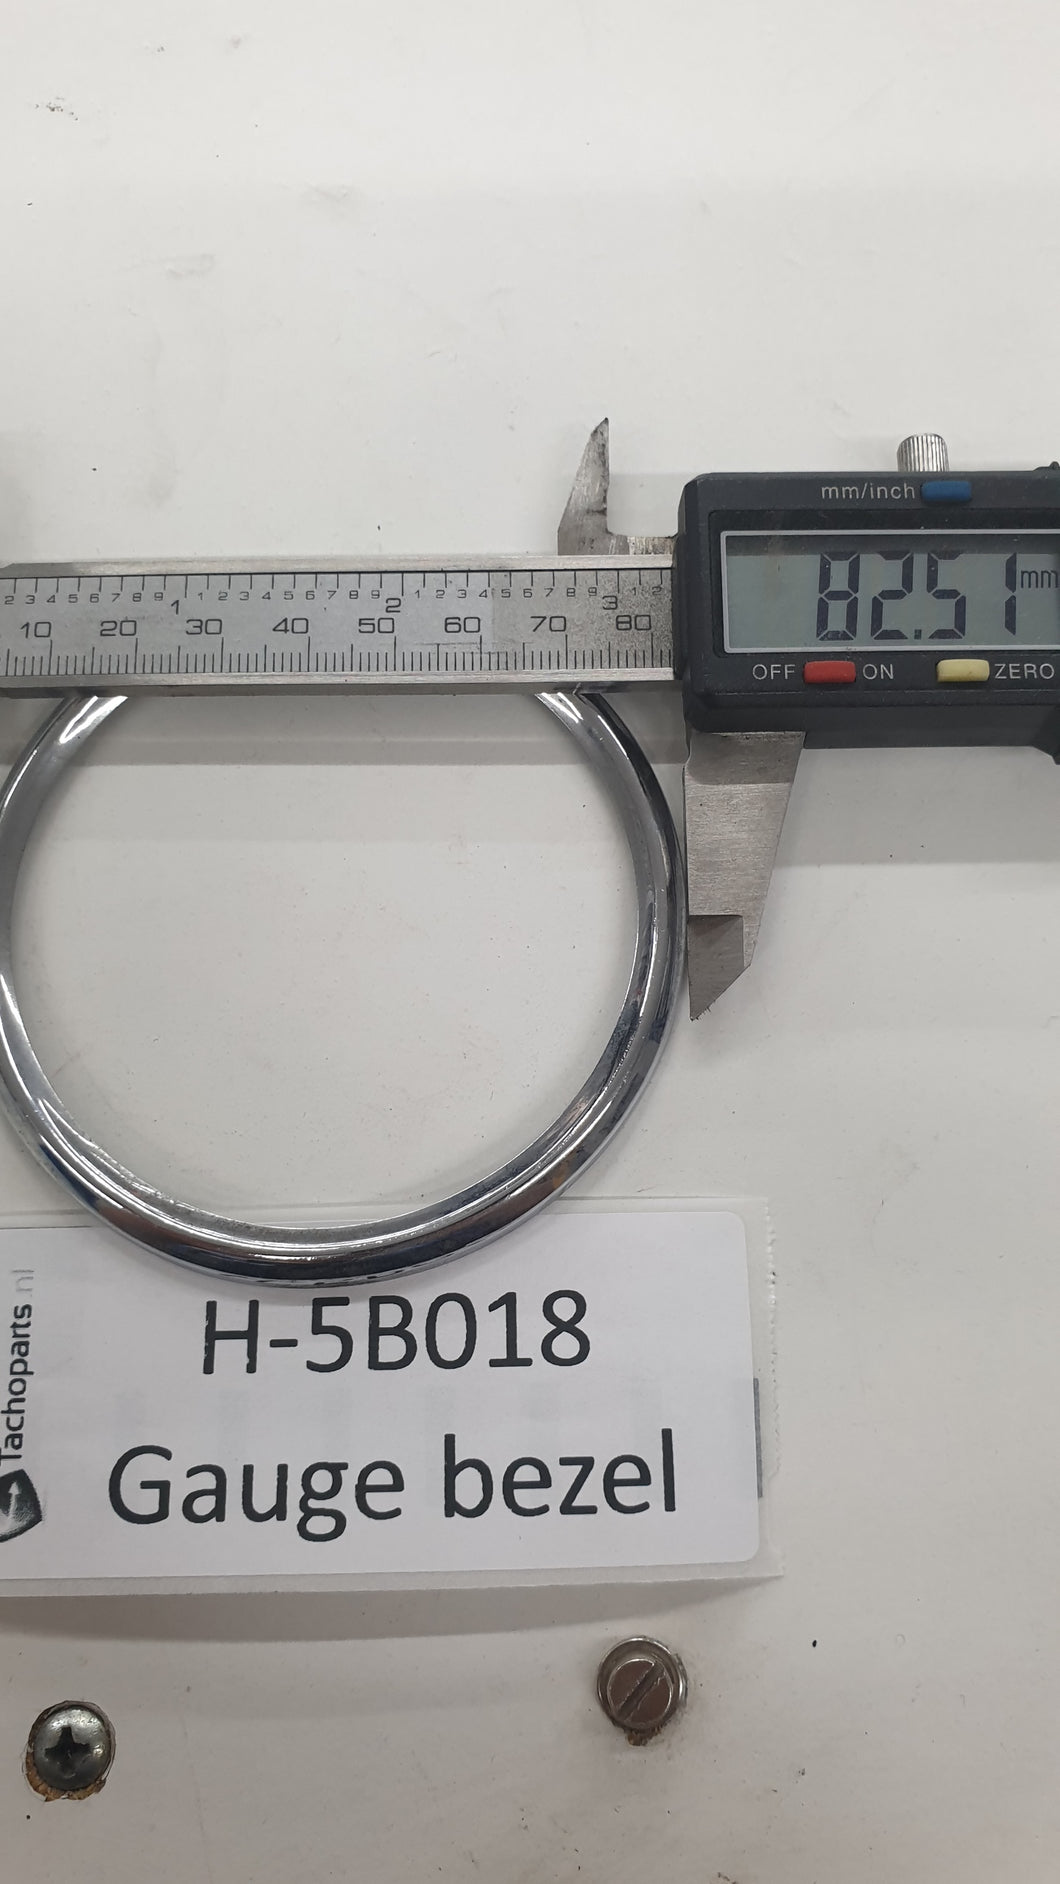 H-5B018 gauge bezel